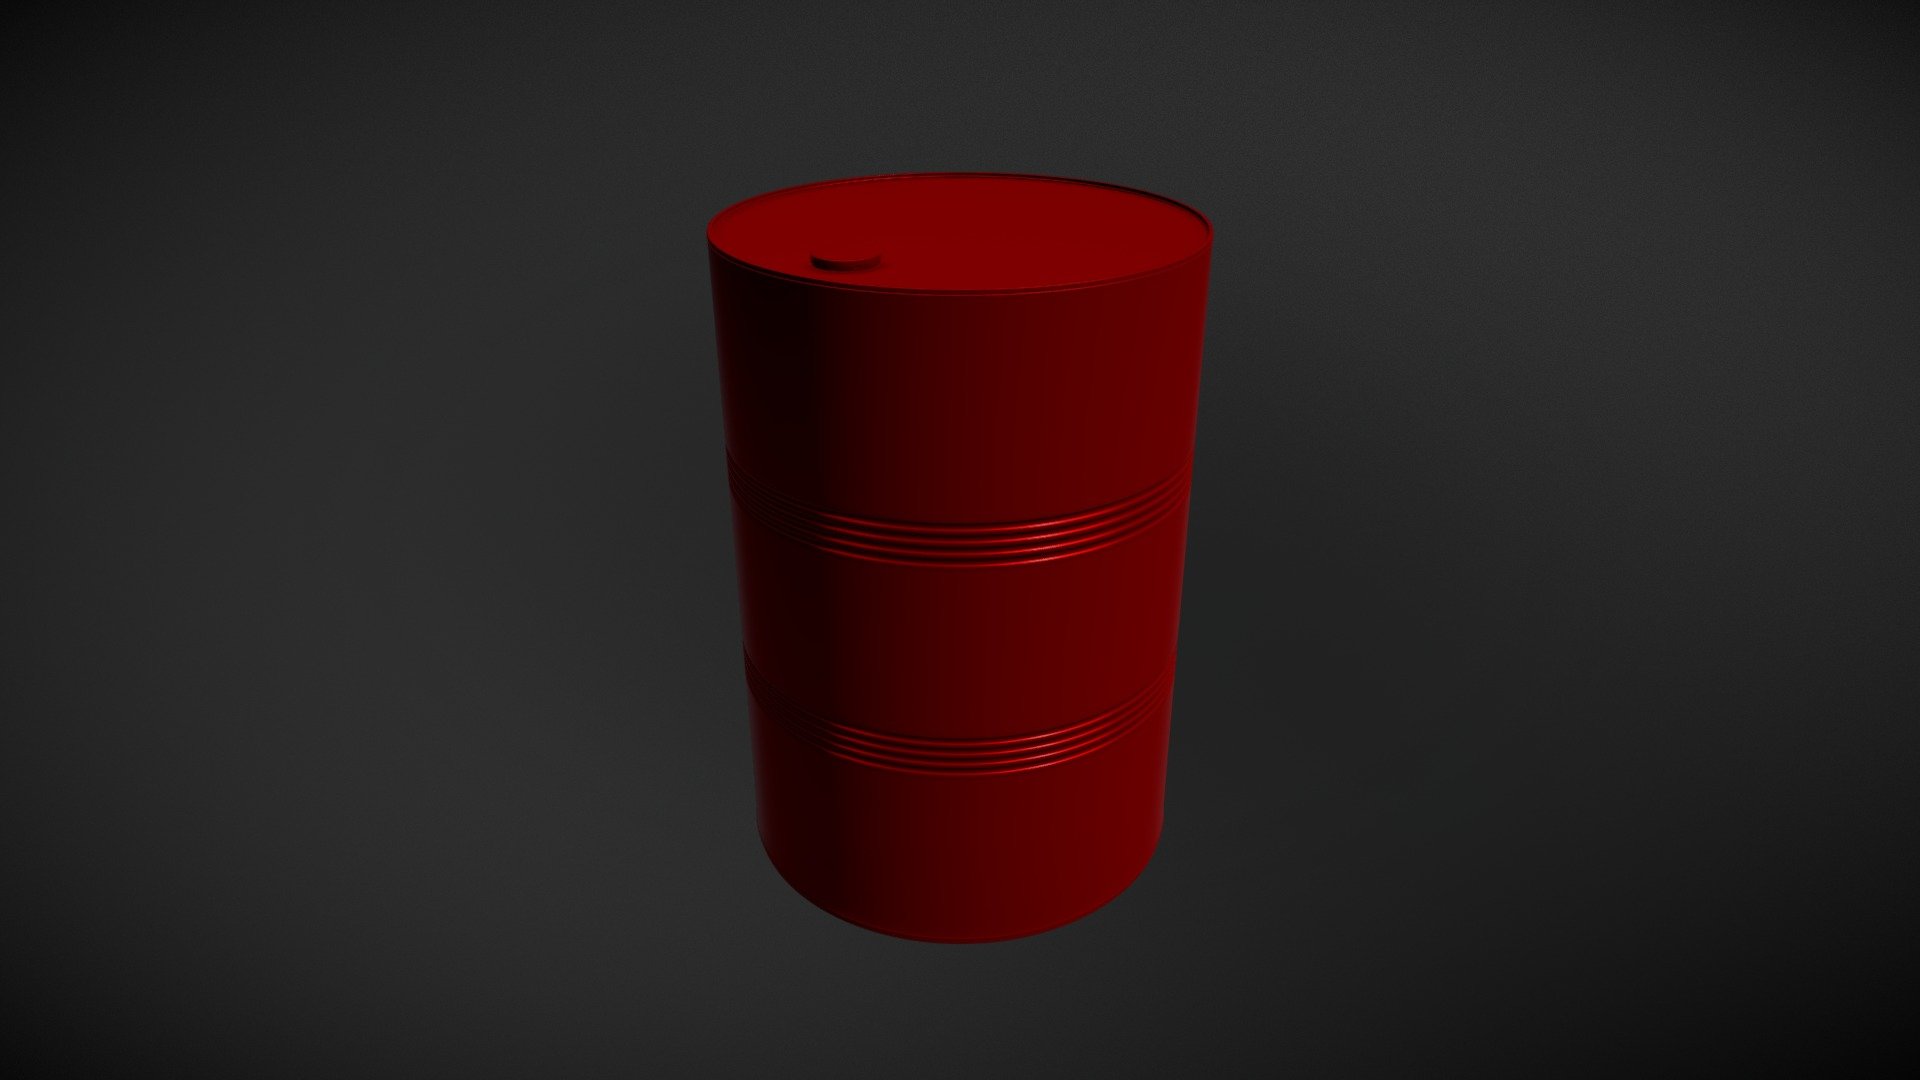 Barrel - 3D model by odinmerlinmay [a0bd11a] - Sketchfab